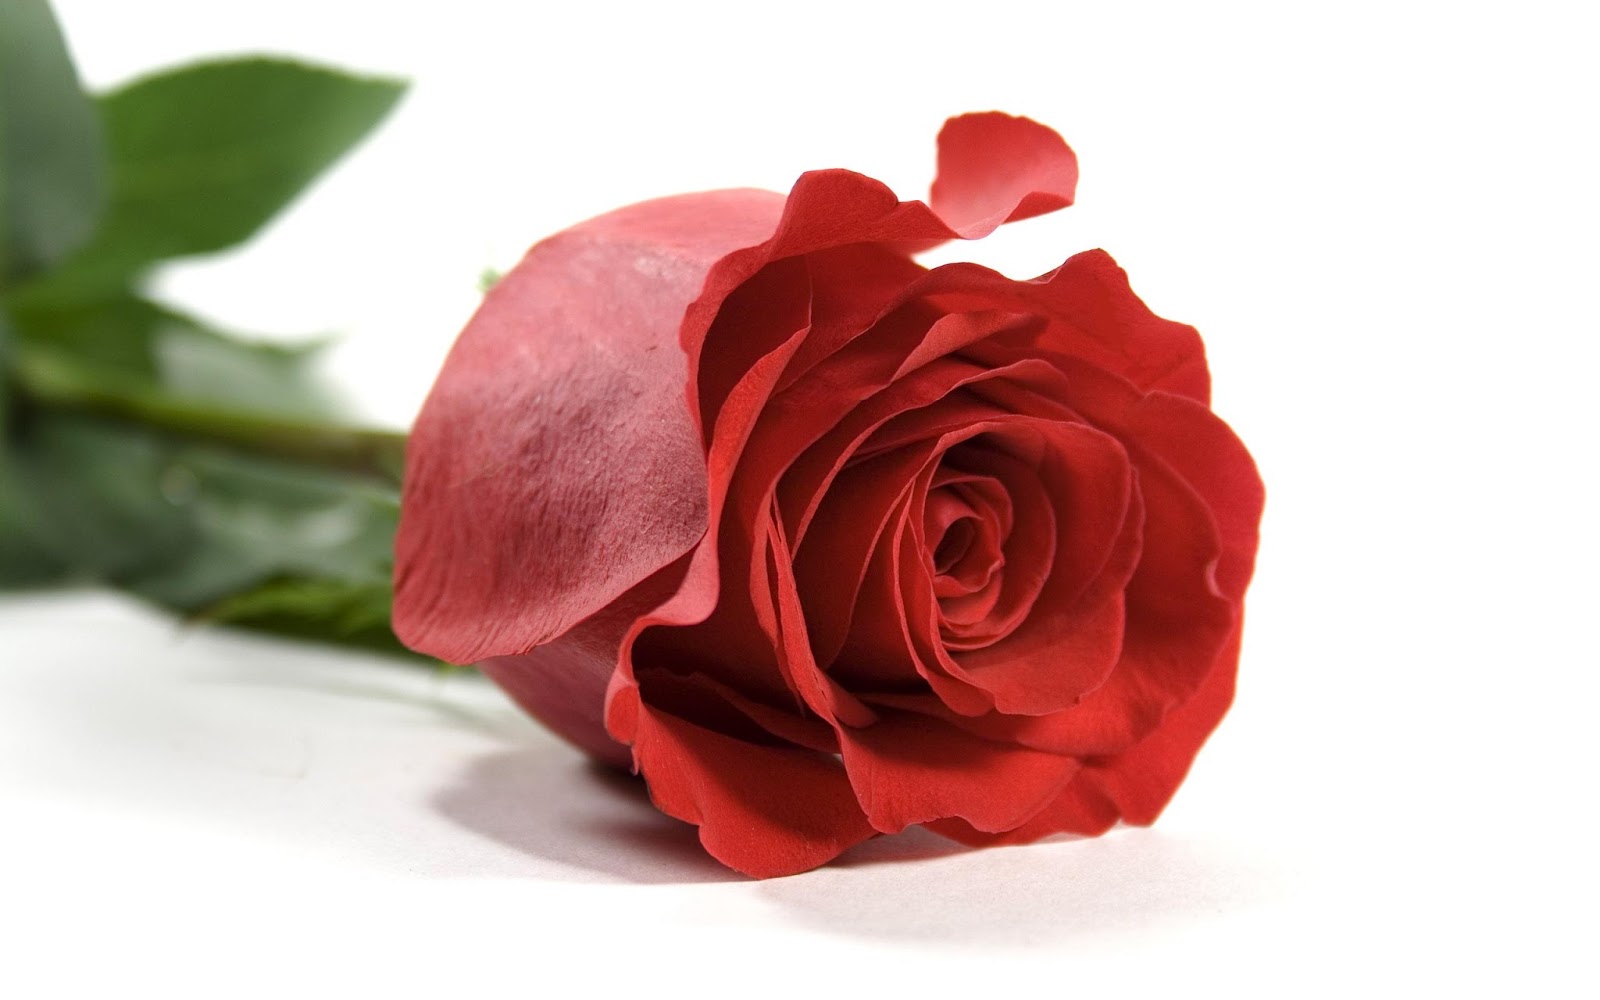 Tặng một bông hồng đỏ cho đồng nghiệp để thể hiện tình cảm quý mến